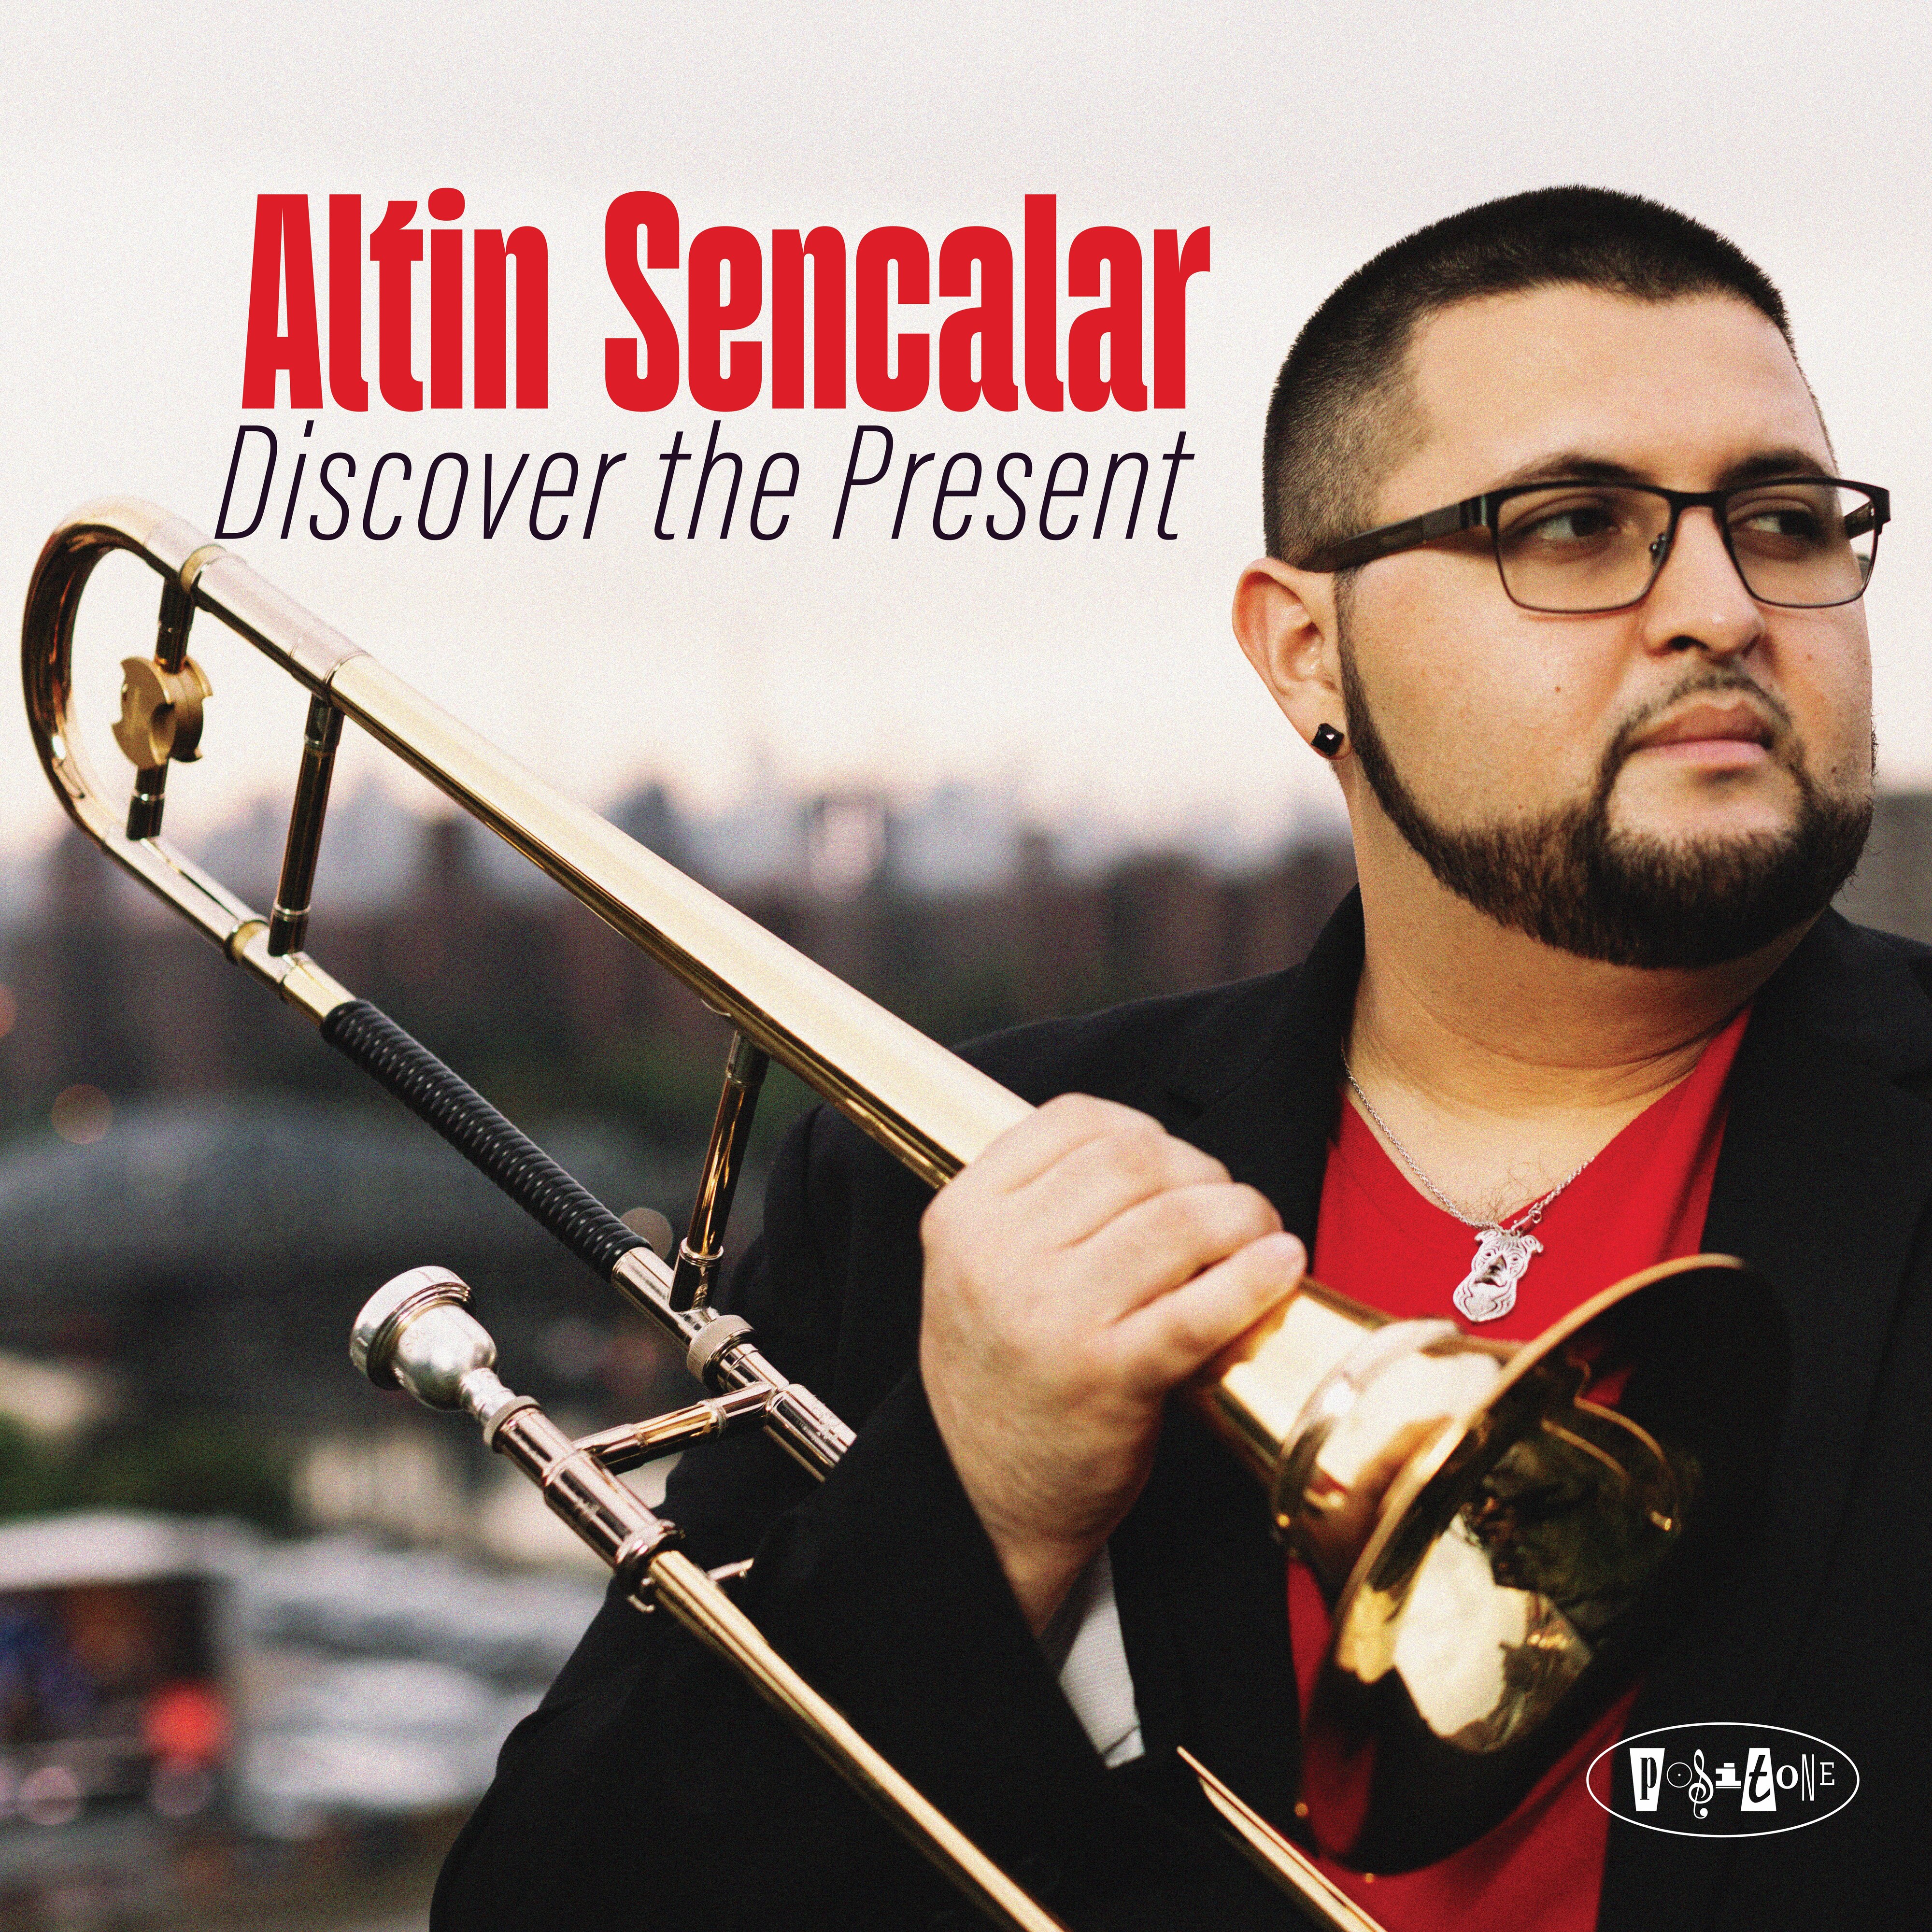 Altin Sencalar CD Release: Discover the Present